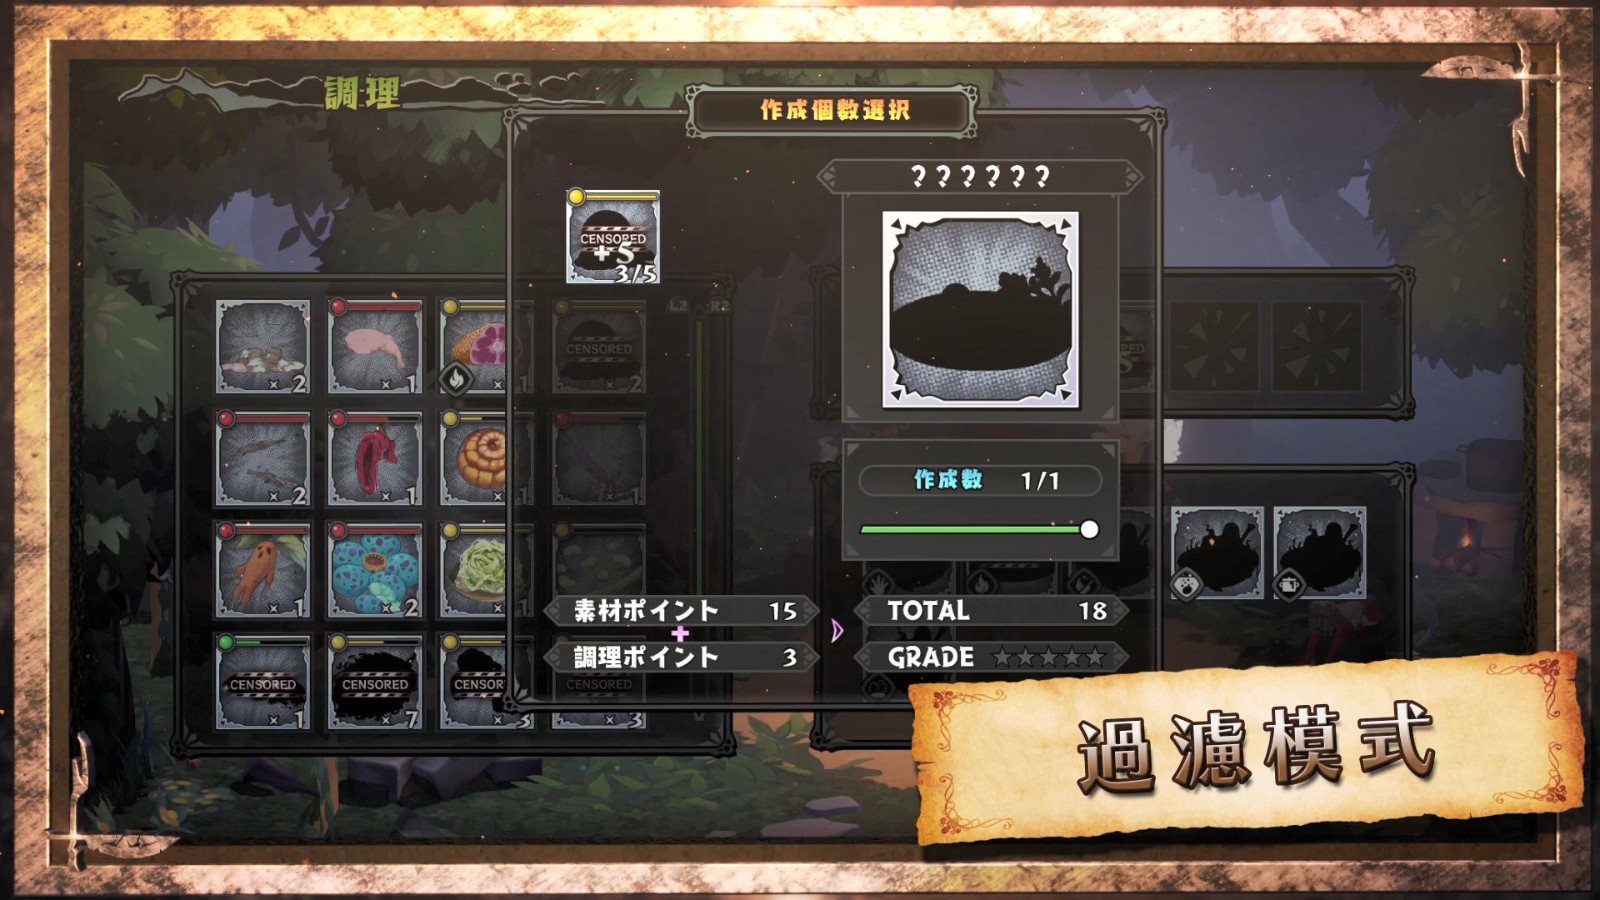 日本一《魔物饭大冒险》中文版游戏系统介绍 6月30日发售